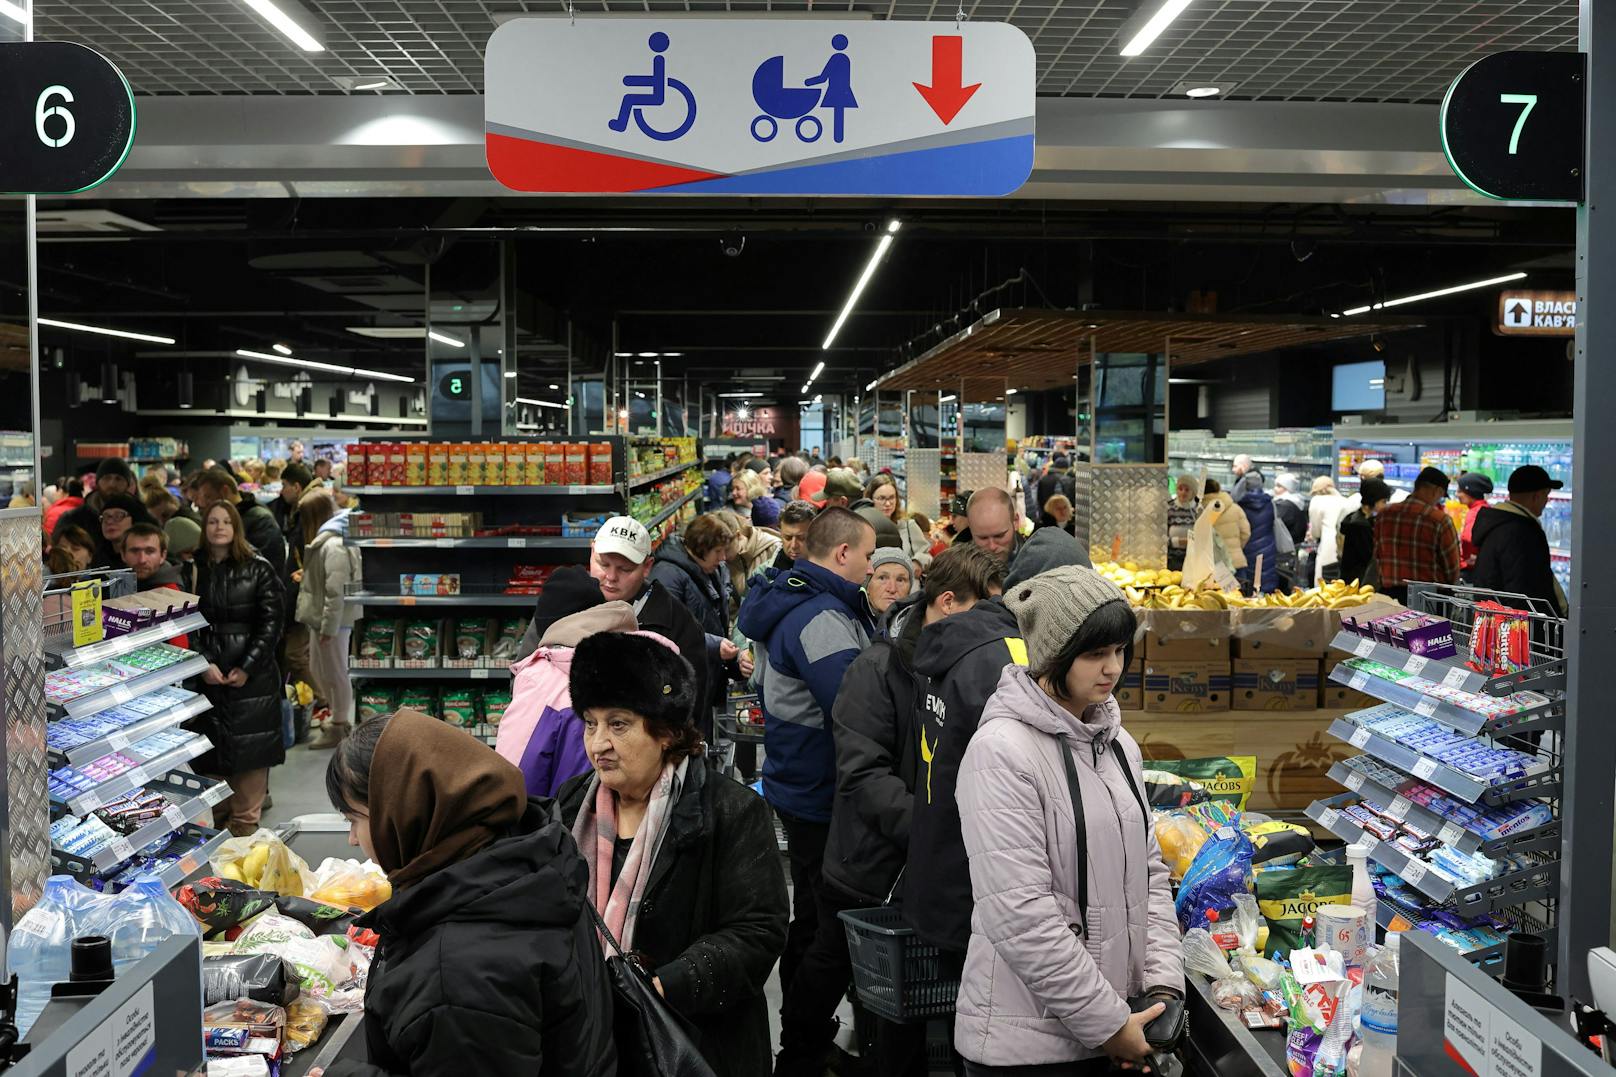 Monatelang blieben die Geschäfte in Cherson während der russischen Besatzung geschlossen, da keine Waren geliefert wurden. Nun sperrte der erste Supermarkt wieder auf.